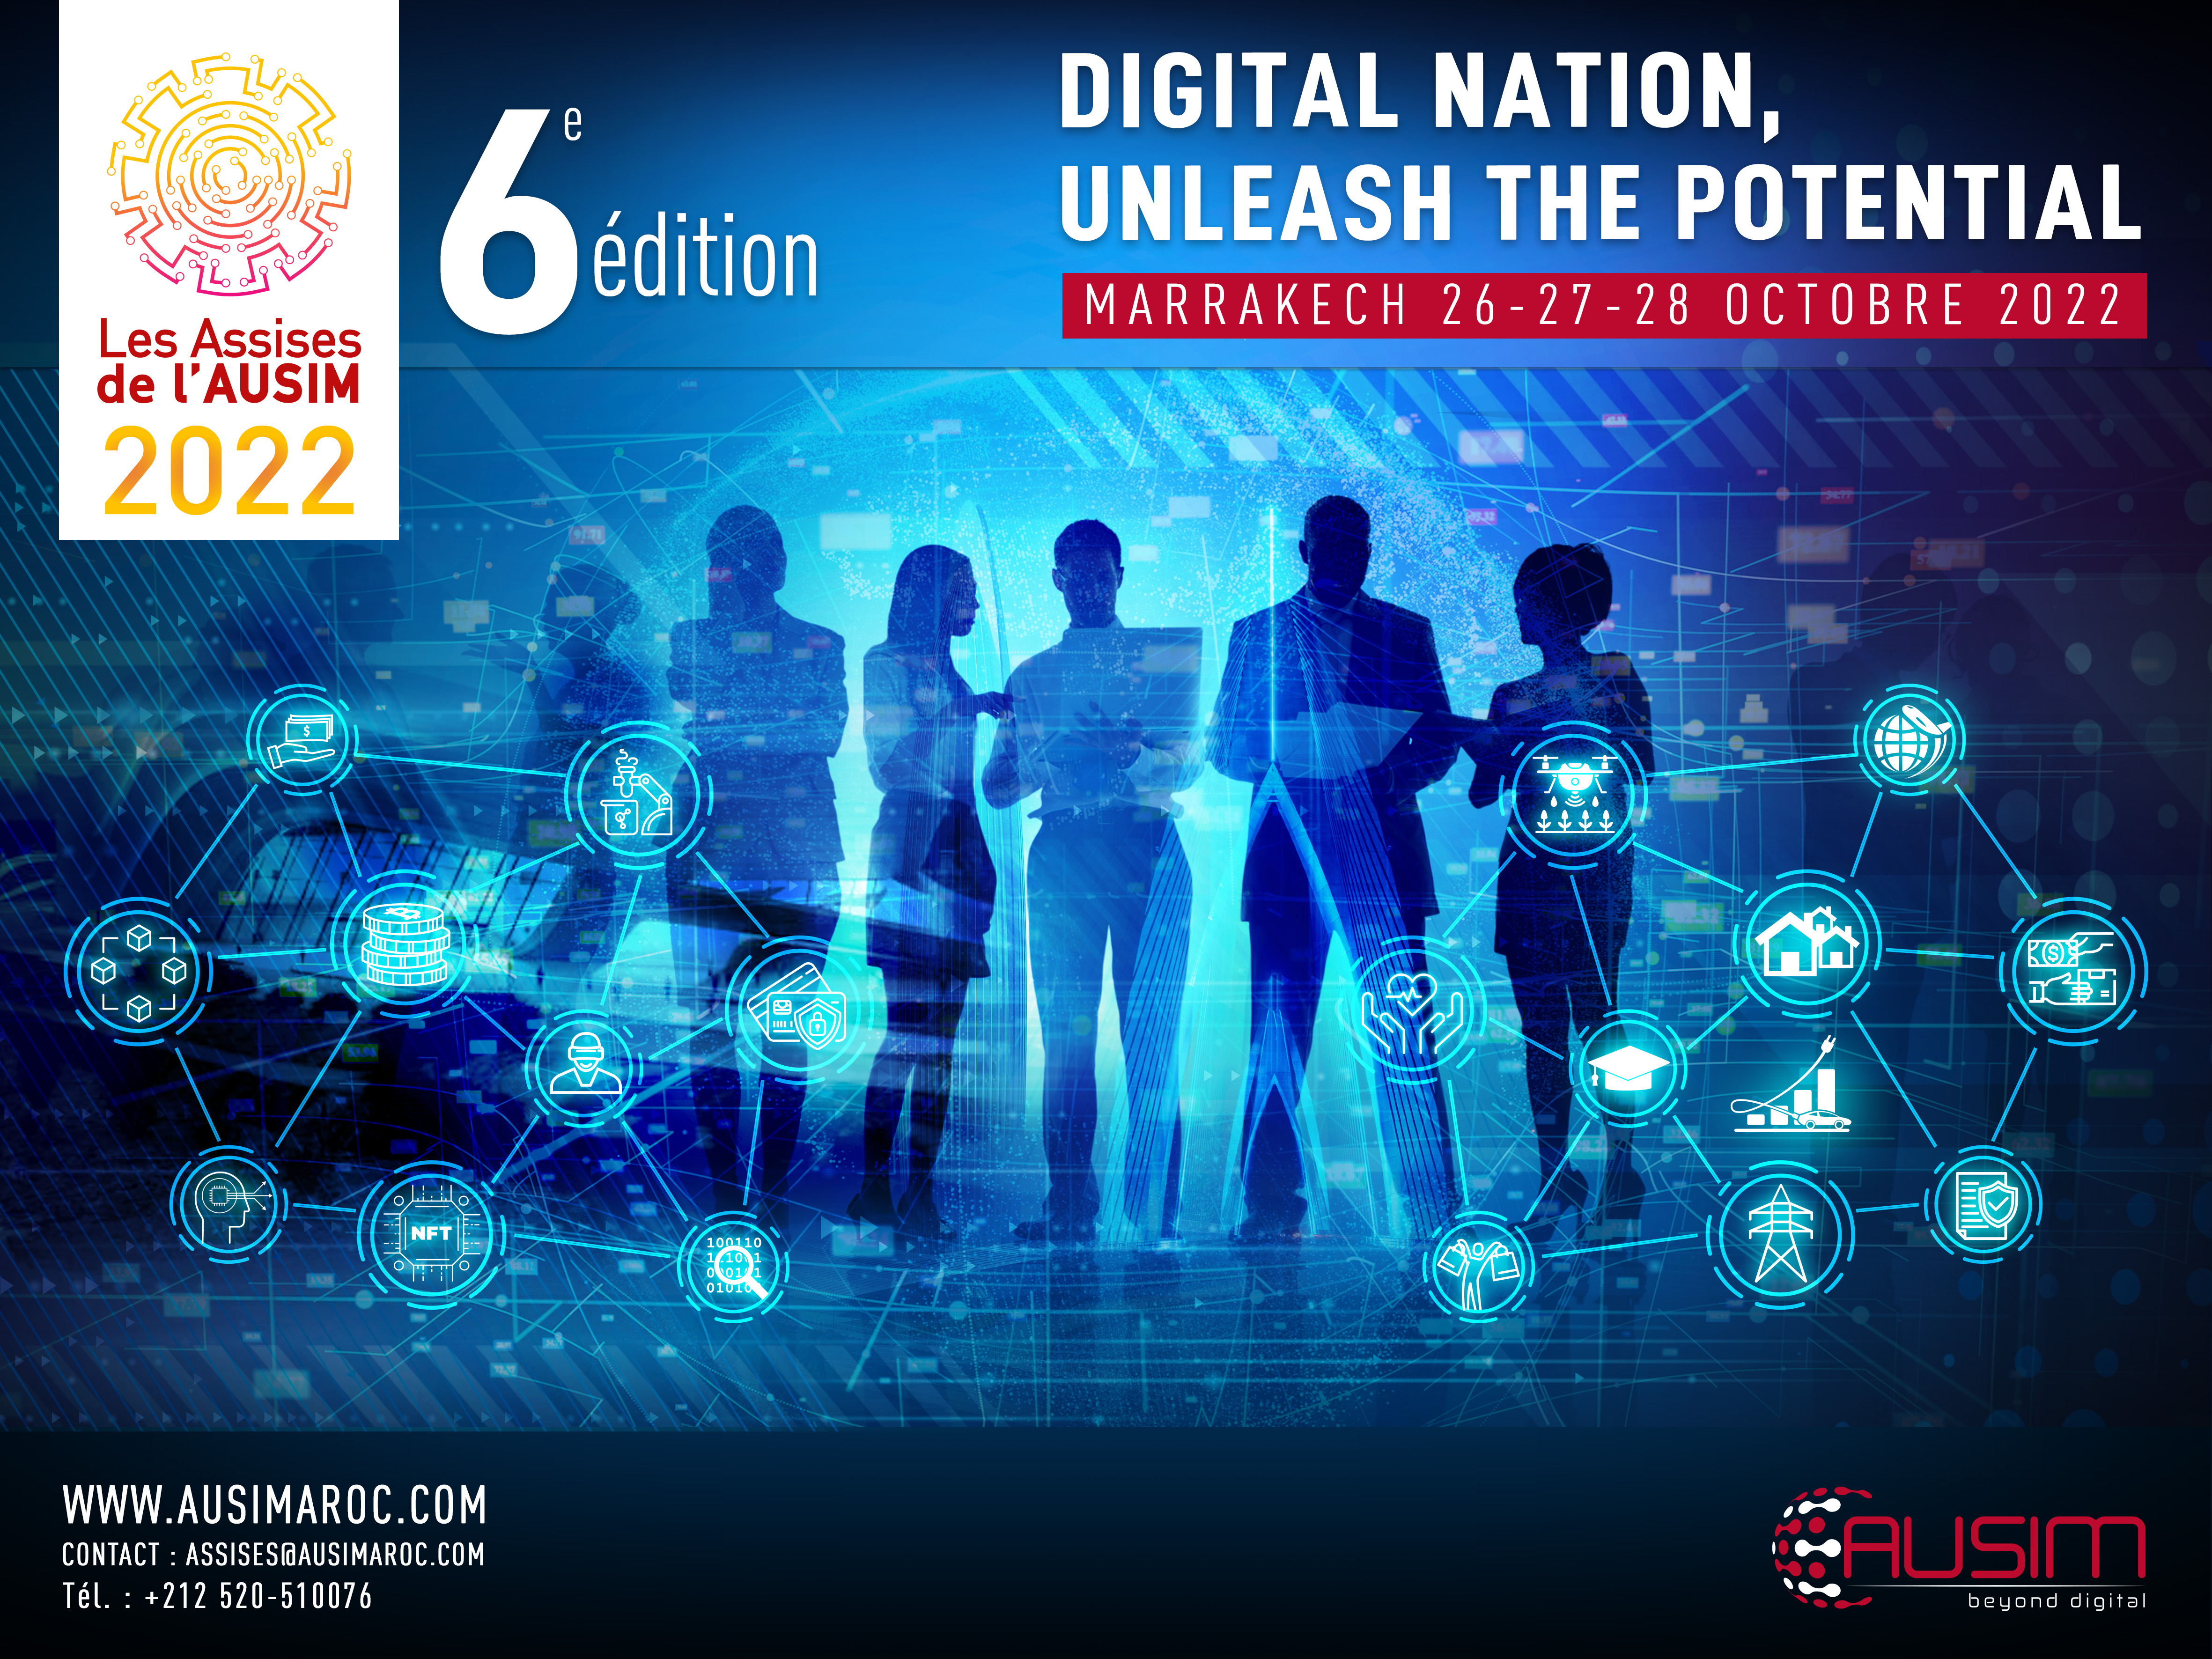 La 6ème édition des Assises de l’AUSIM revient en Octobre avec la thématique « Digital Nation : Unleash the Potential » !